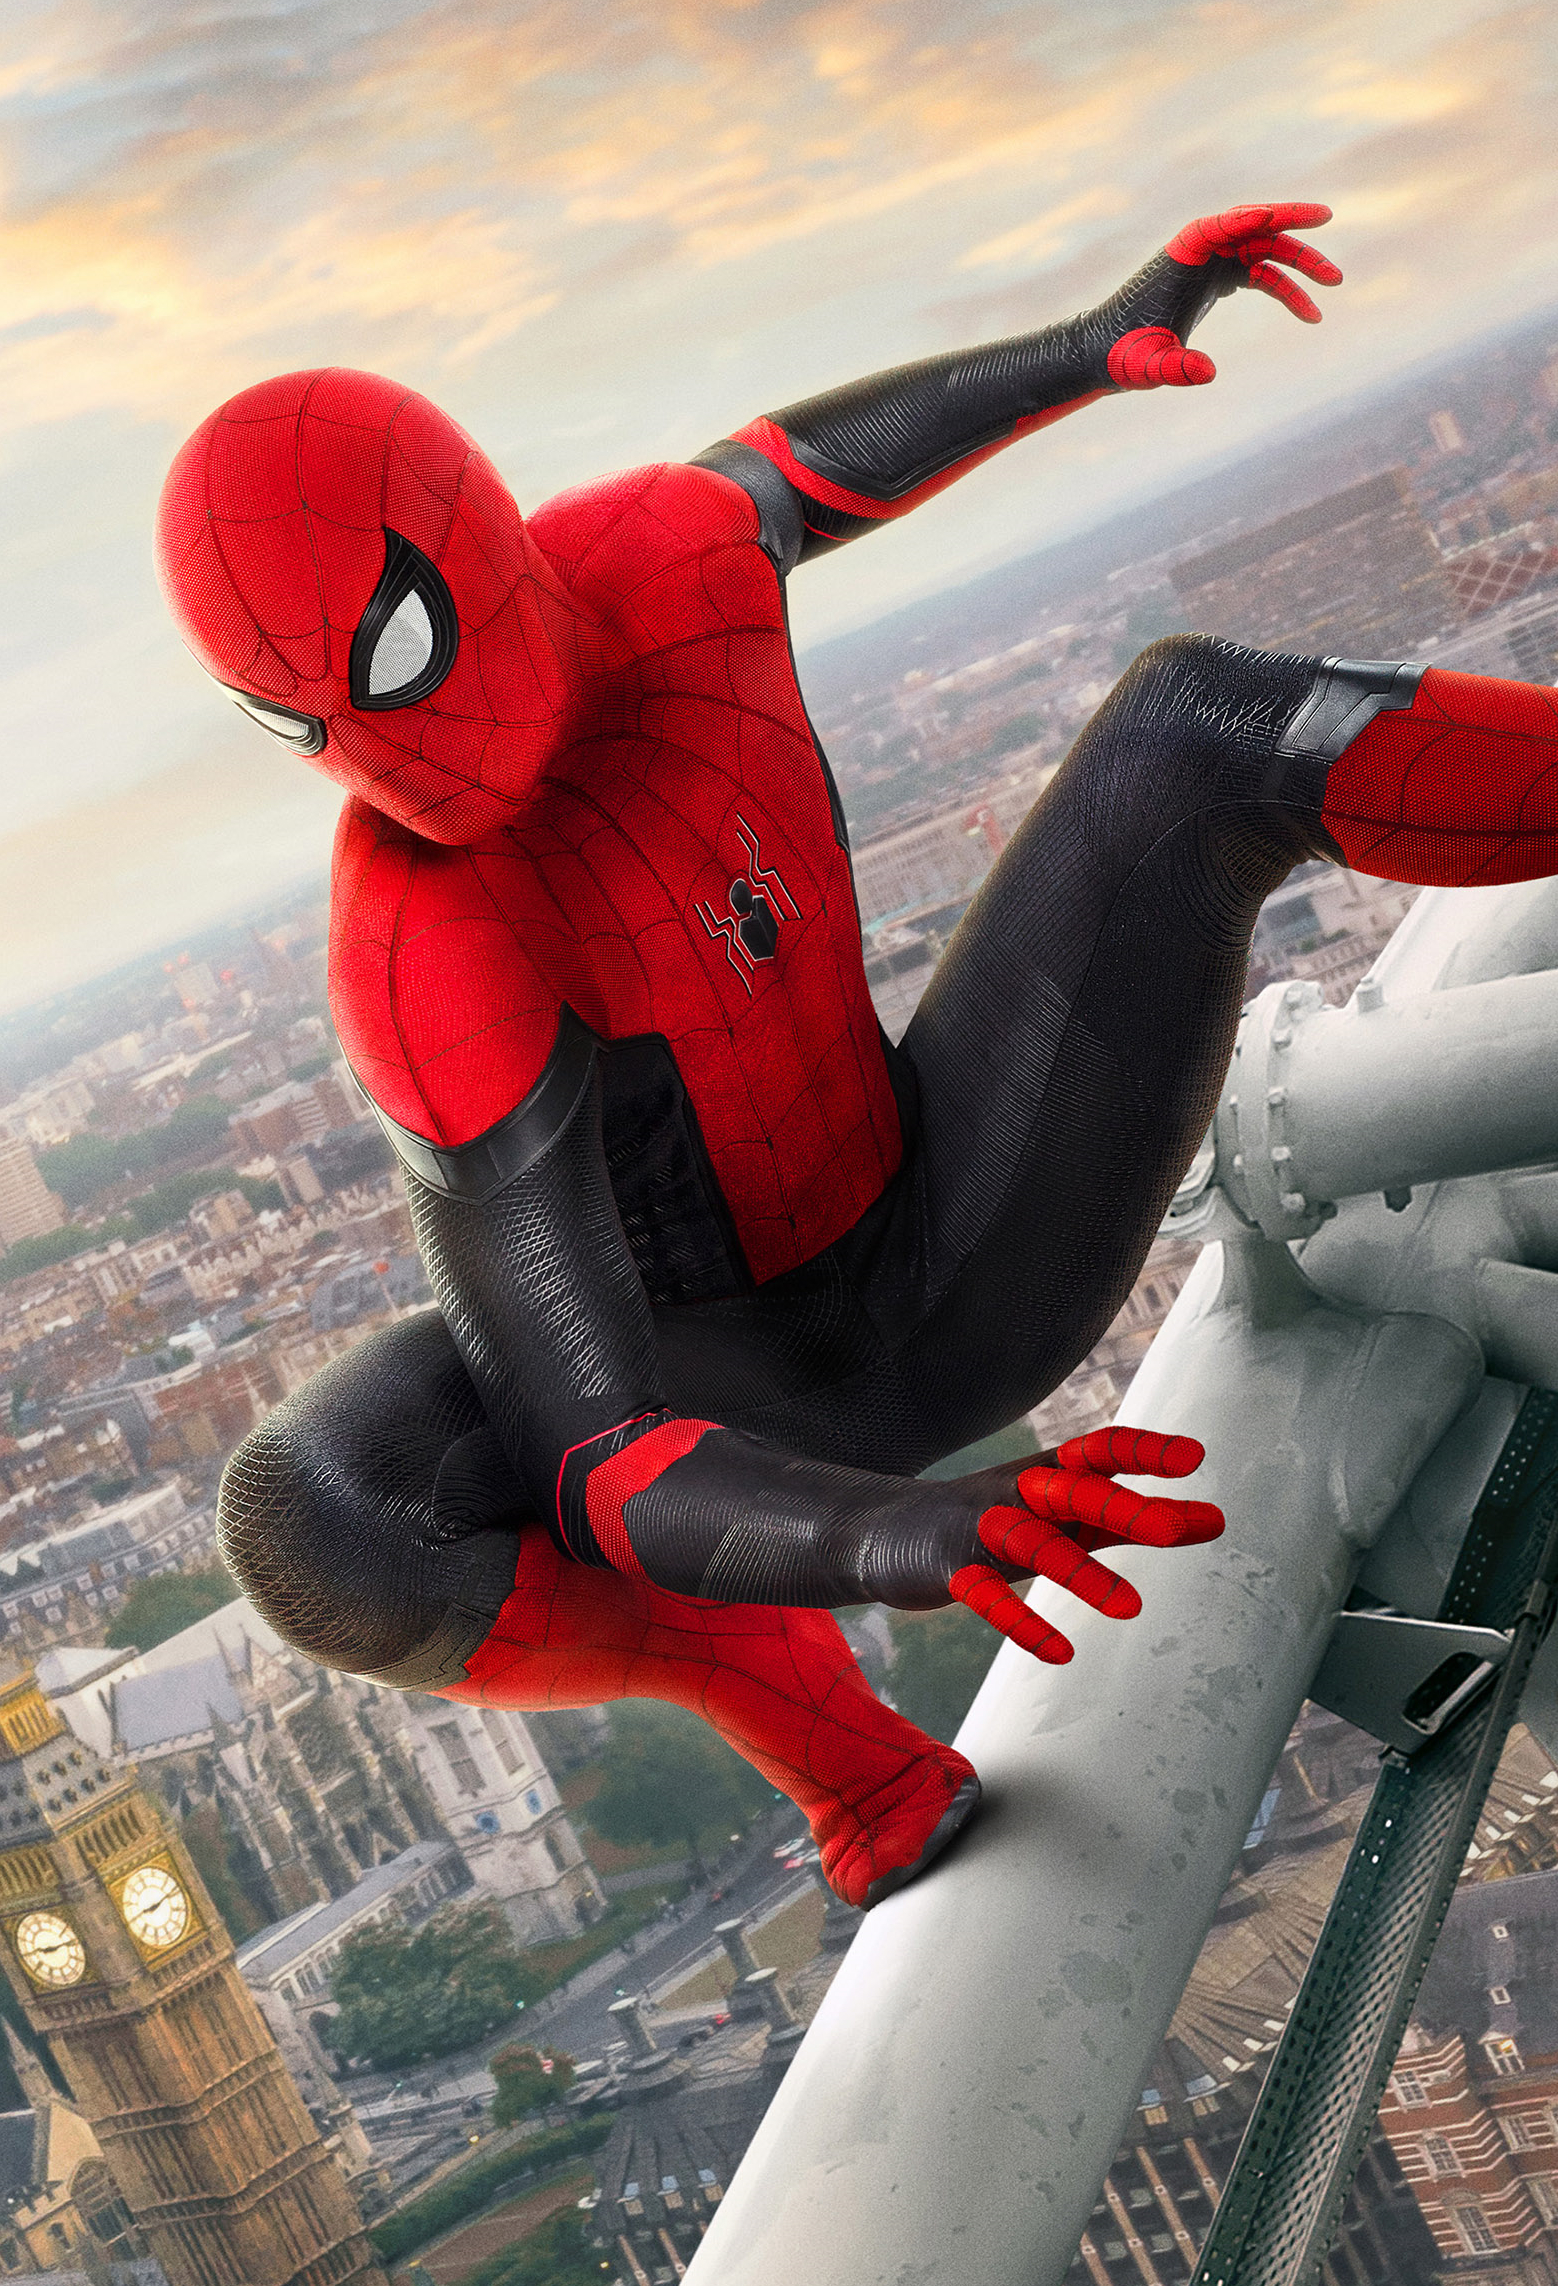 Spiderman rejoint Marvel, quelles conséquences pour l'homme araignée?